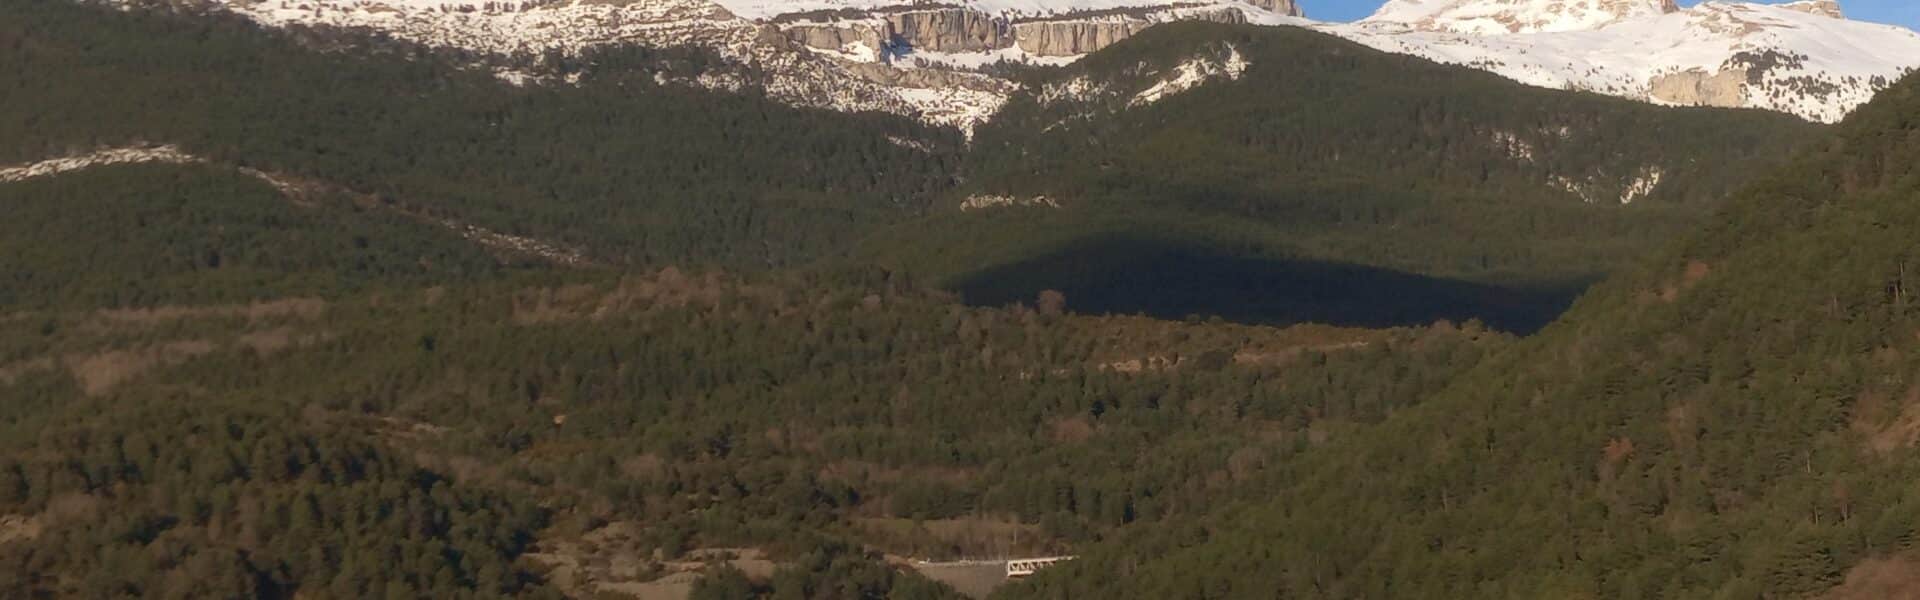 Ascenso a la Peña Collarada en el Valle de Aragón